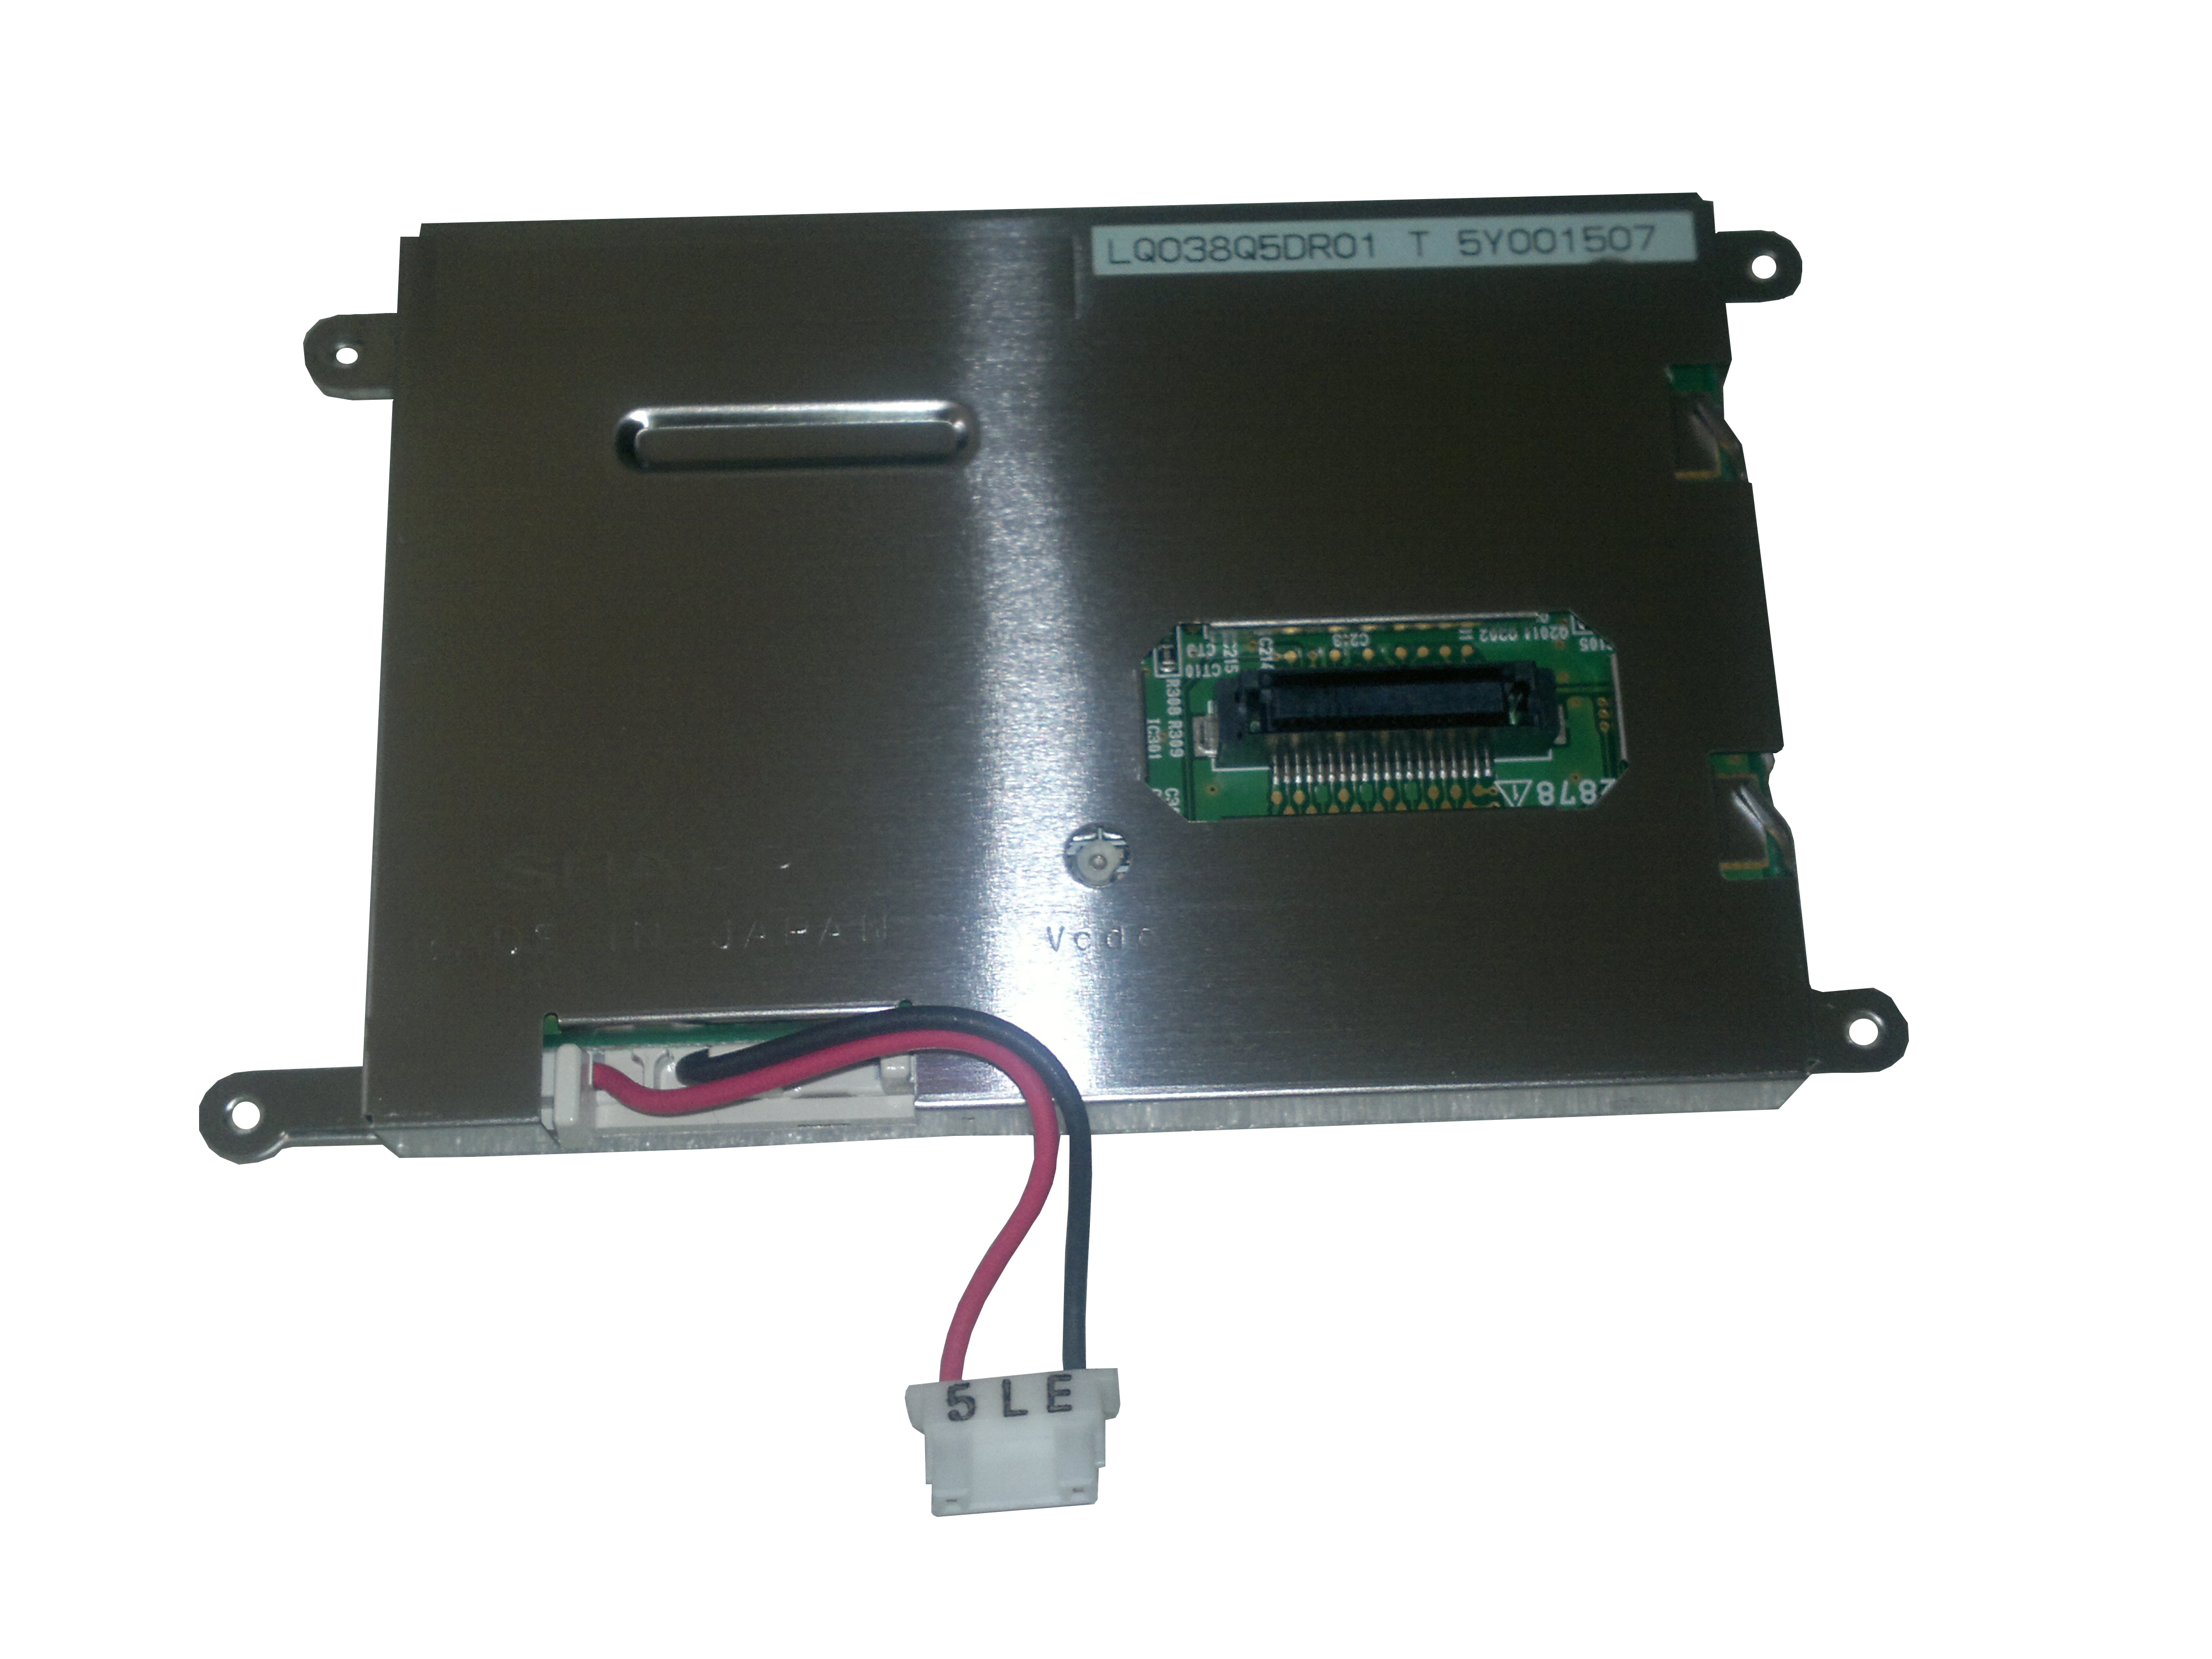 夏普3.8寸(LQ038Q5DR01)LCD液晶显示屏,液晶屏产品信息-晶海光电